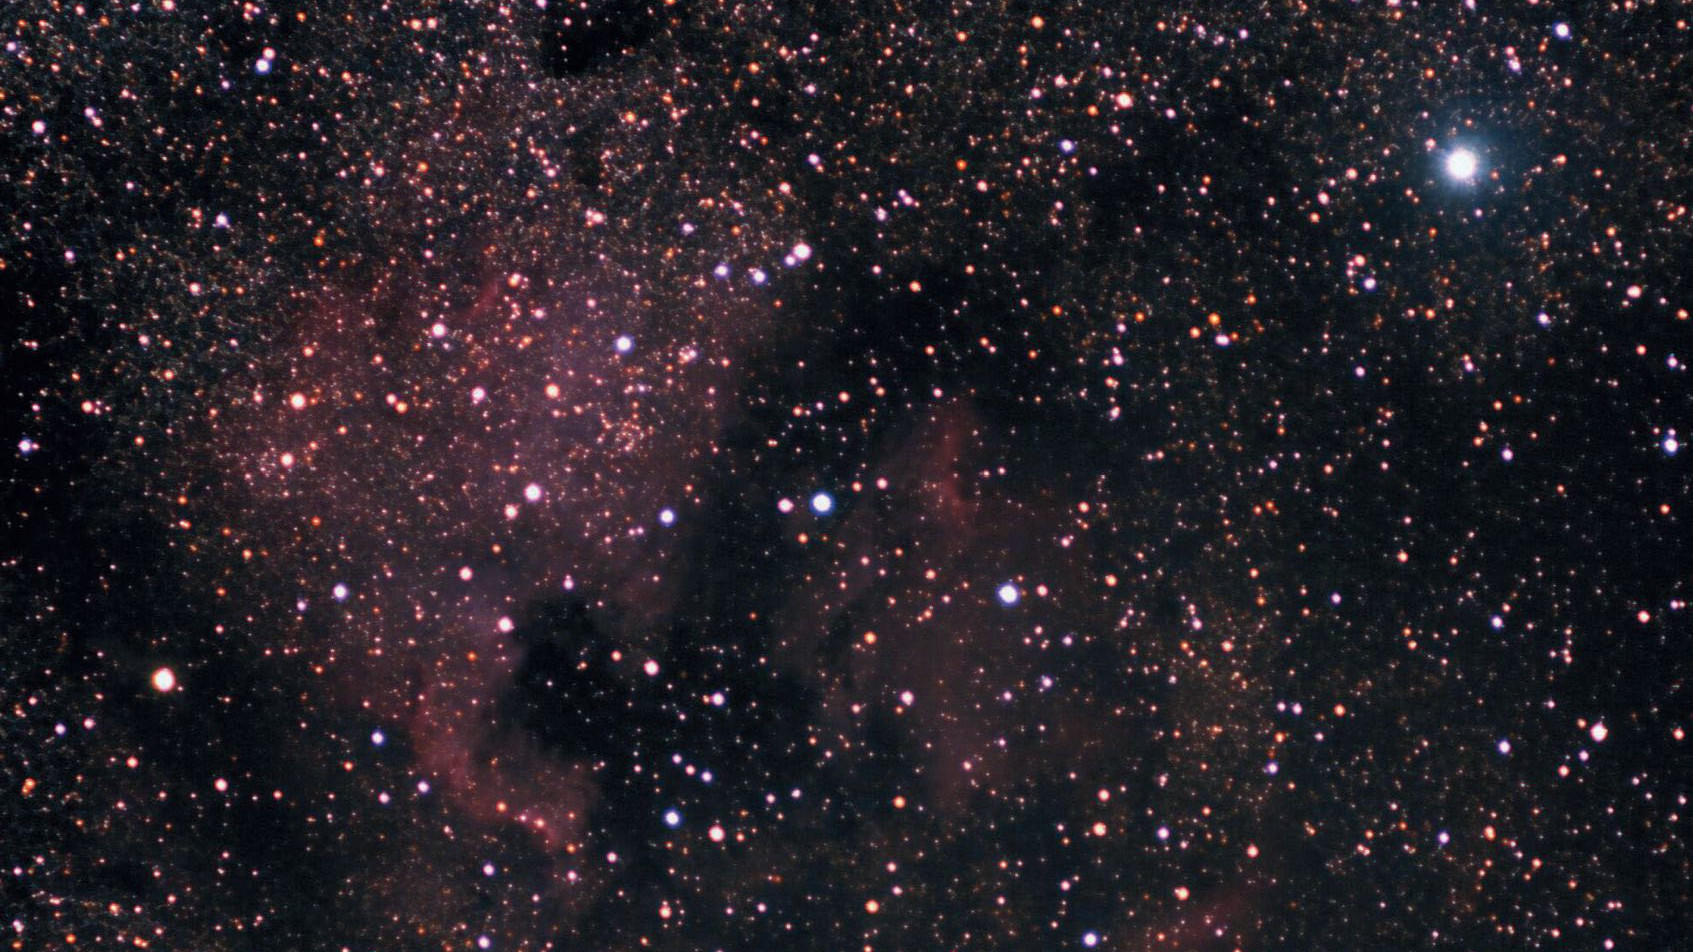 Südöstlich von Deneb (heller Stern rechts oben) findet sich mit dem Nordamerikanebel NGC 7000 einer der schönsten Gasnebel. Der Mini-Orion ist links von der Bildmitte bzw. östlich des Golfs von Mexiko zu erkennen. Marcus Degenkolbe